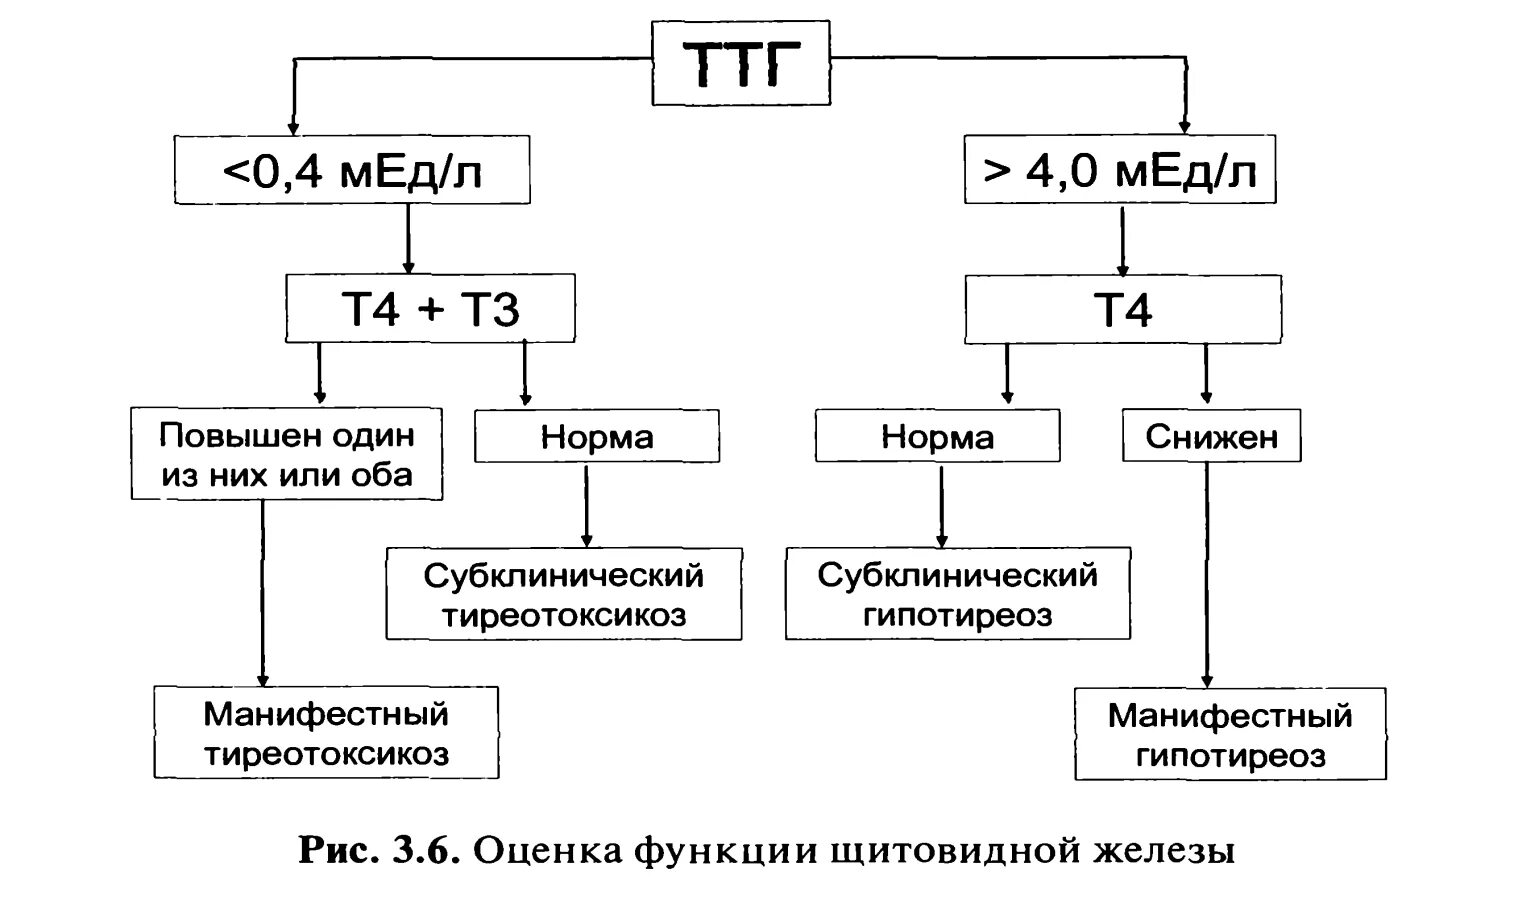 Последствия повышенного ттг. Гипотиреоз при нормальном ТТГ т3 т4. Низкий т4 при нормальном ТТГ И повышенном т3. Снижен т3 при нормальном ТТГ. Норма показателей ТТГ т3 т4.